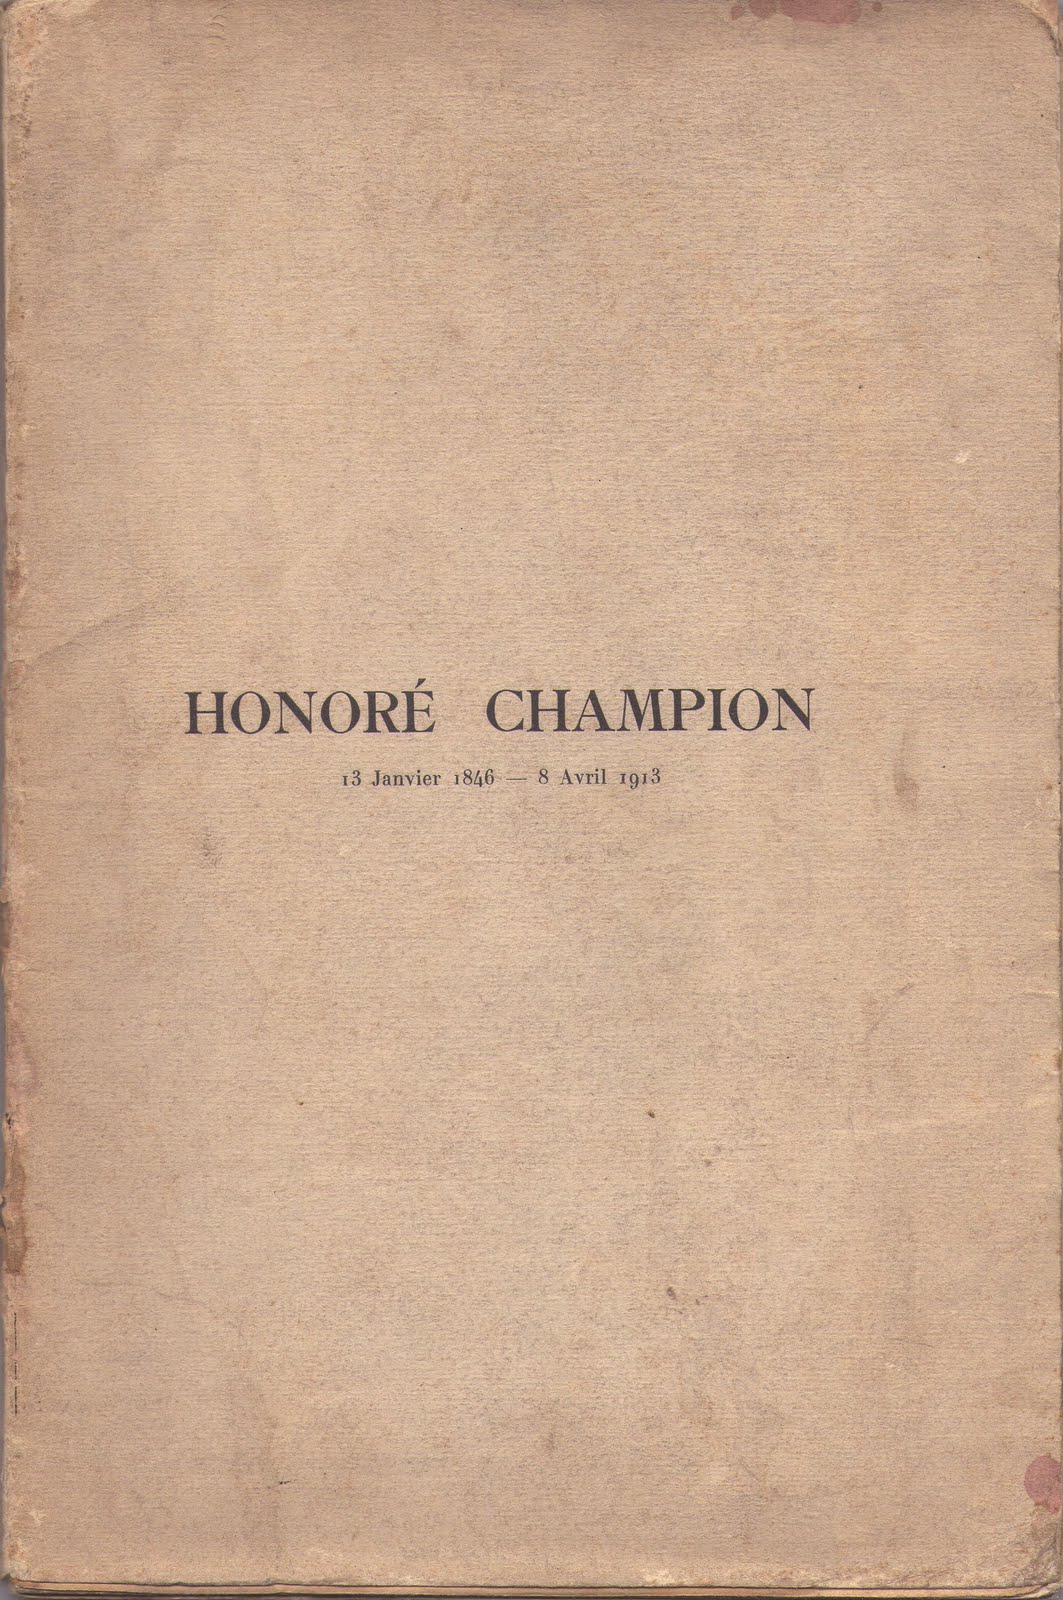 Honoré Champion